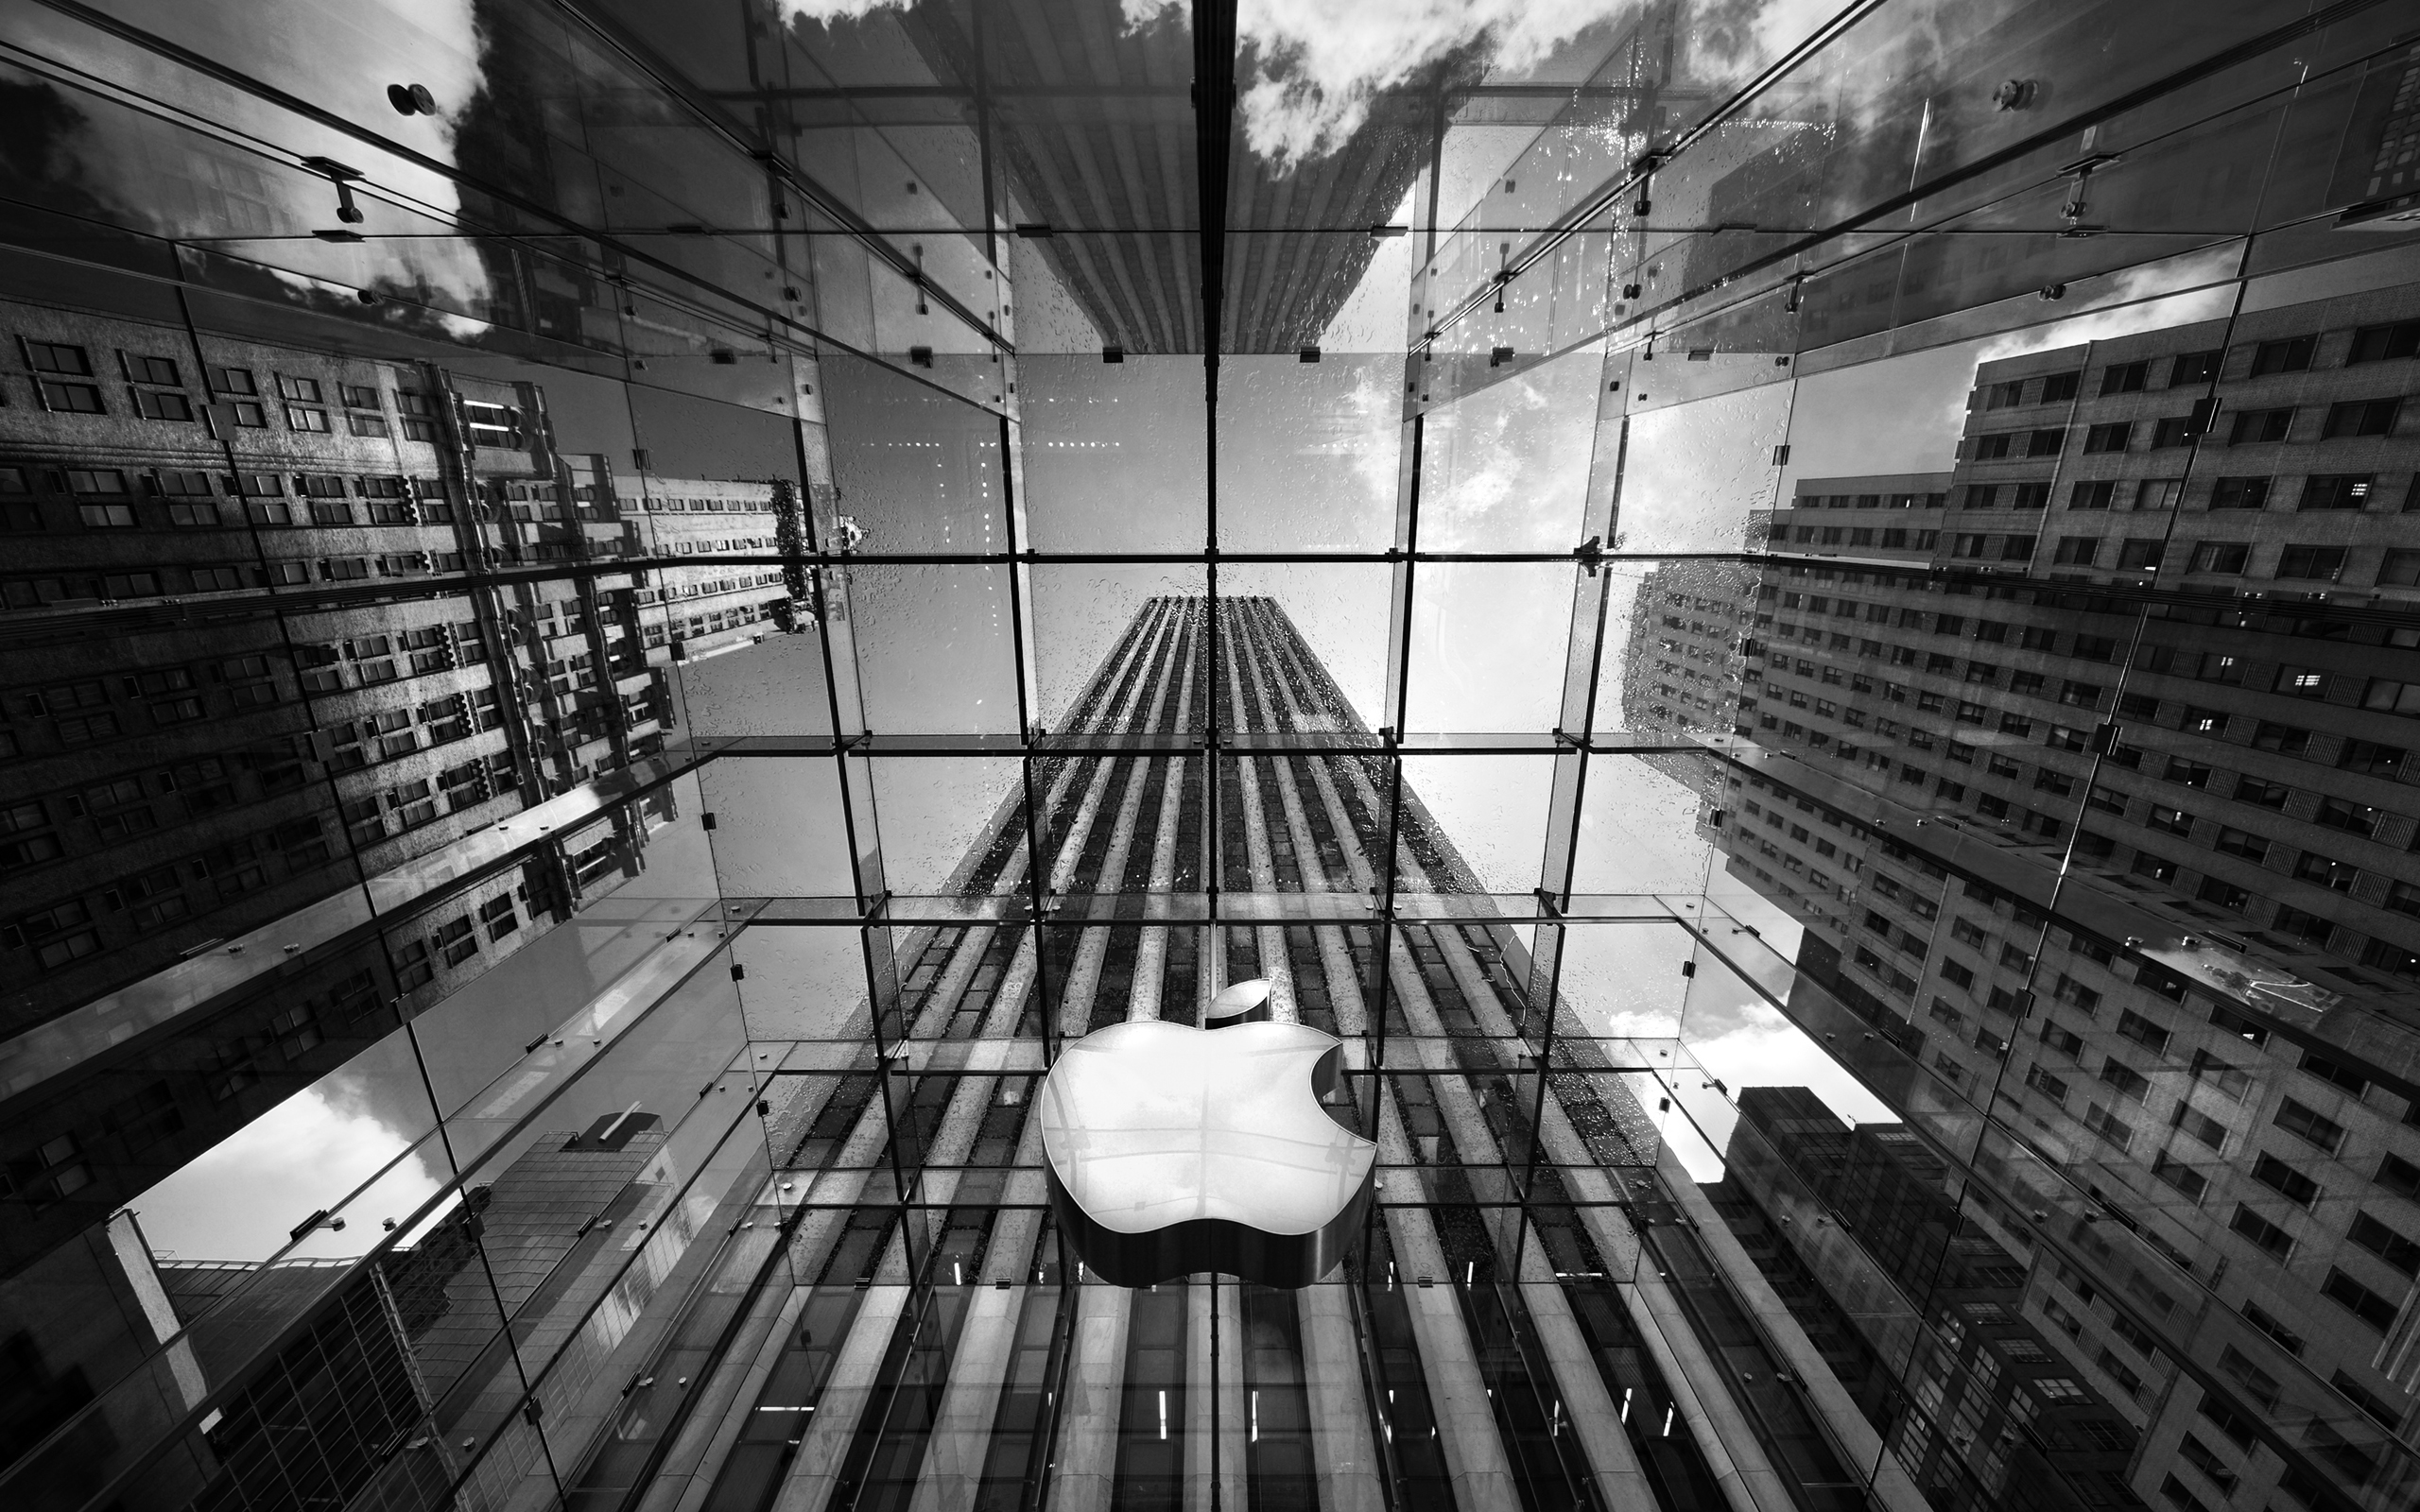 Apple Store New York885922341 - Apple Store New York - York, Store, Mumbai, Apple